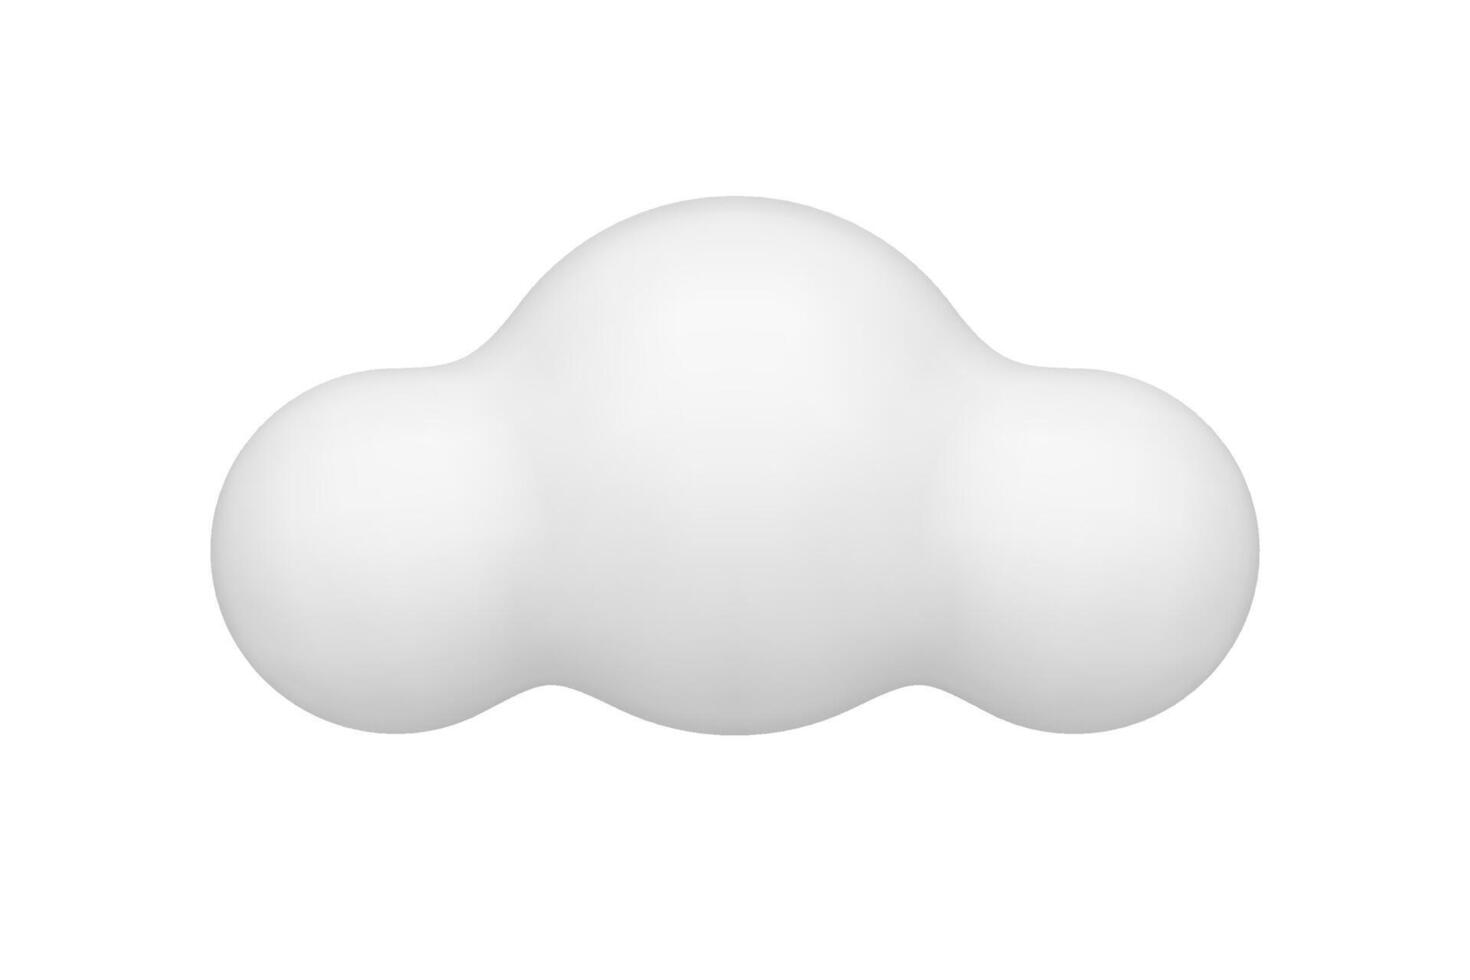 mignonne blanc duveteux nuage atmosphère ballon cercle brouillard réaliste 3d icône illustration vecteur